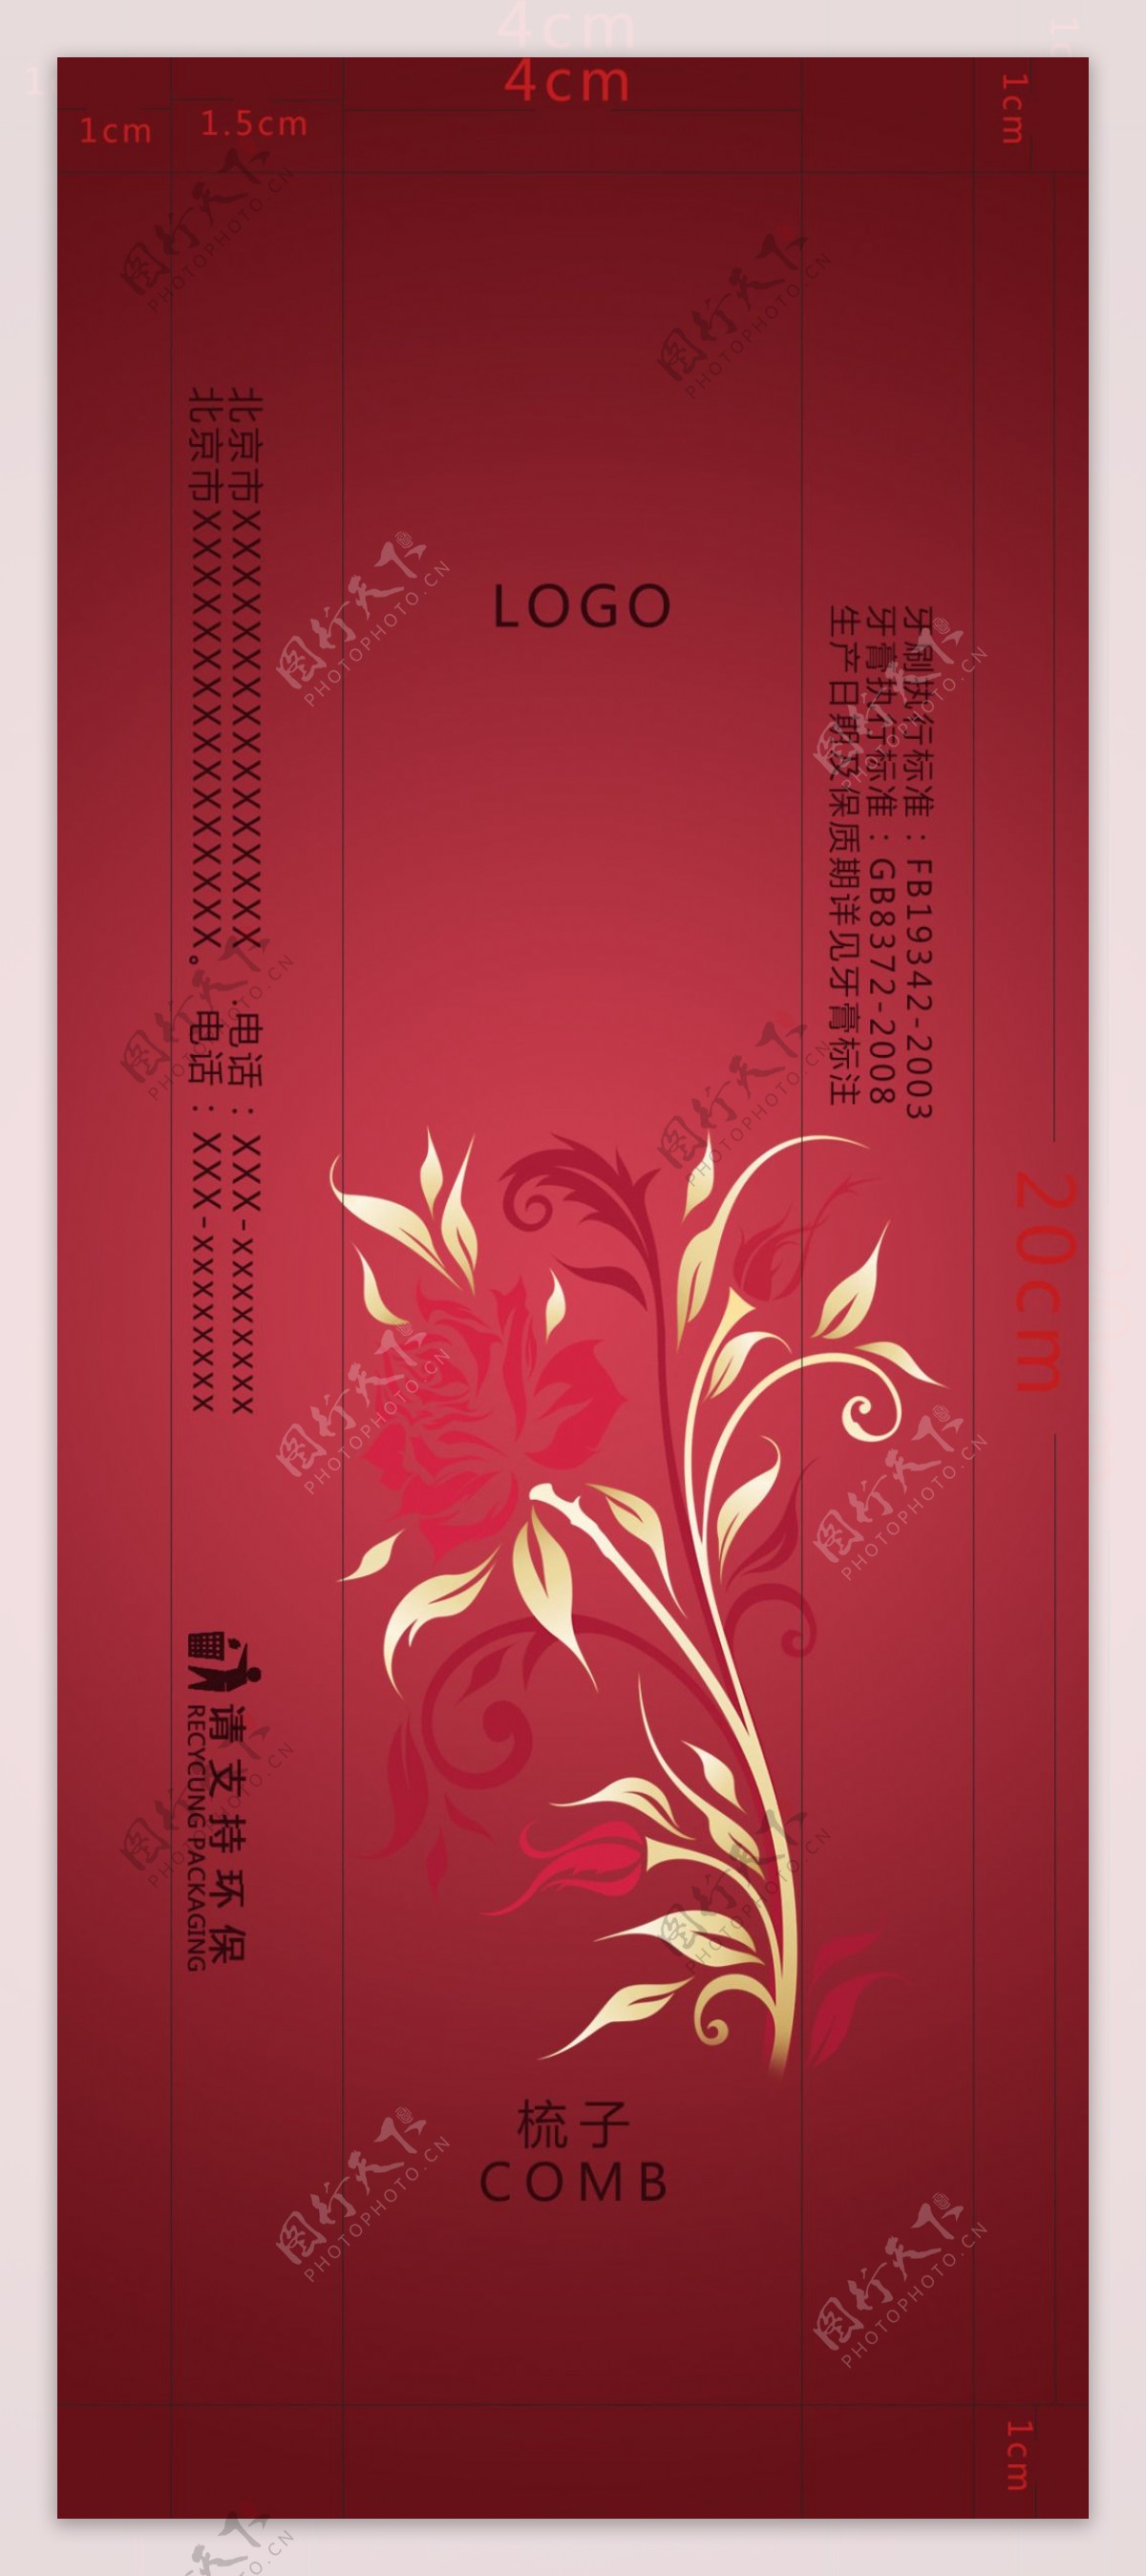 中国风高档酒店用品梳子包装设计